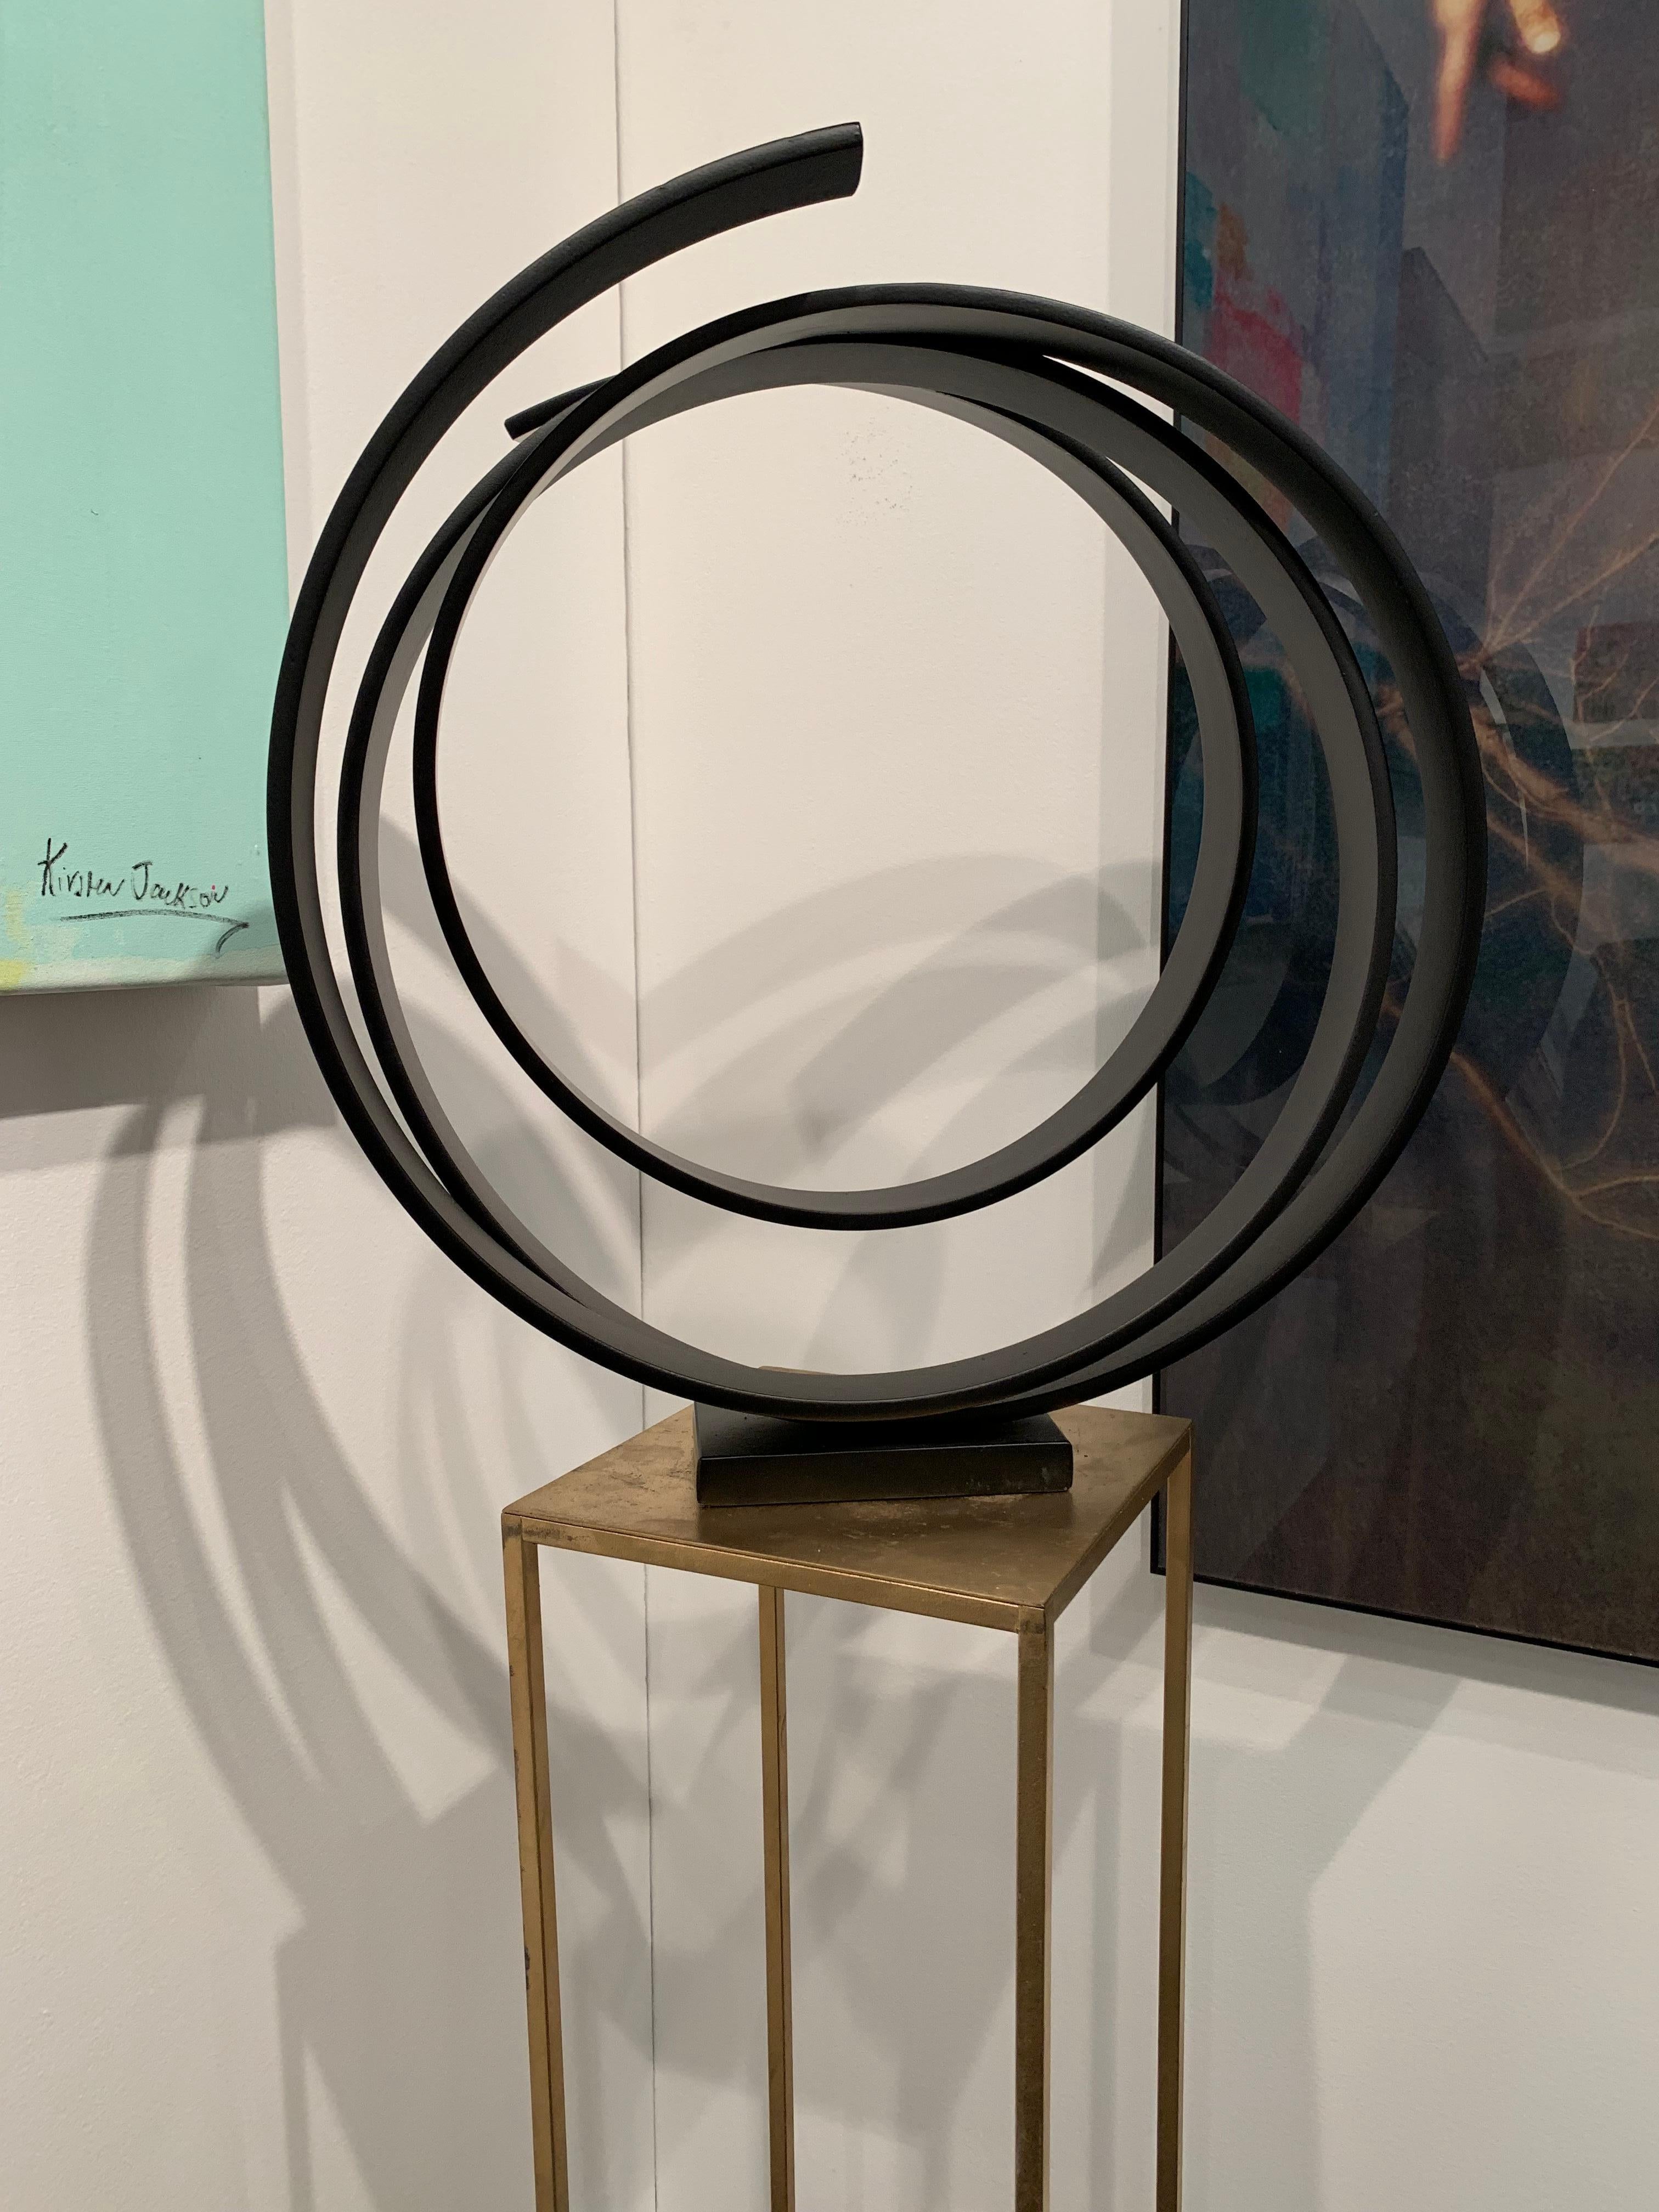 Dancing Orb by Kuno Vollet - Contemporary black circular sculpture 2